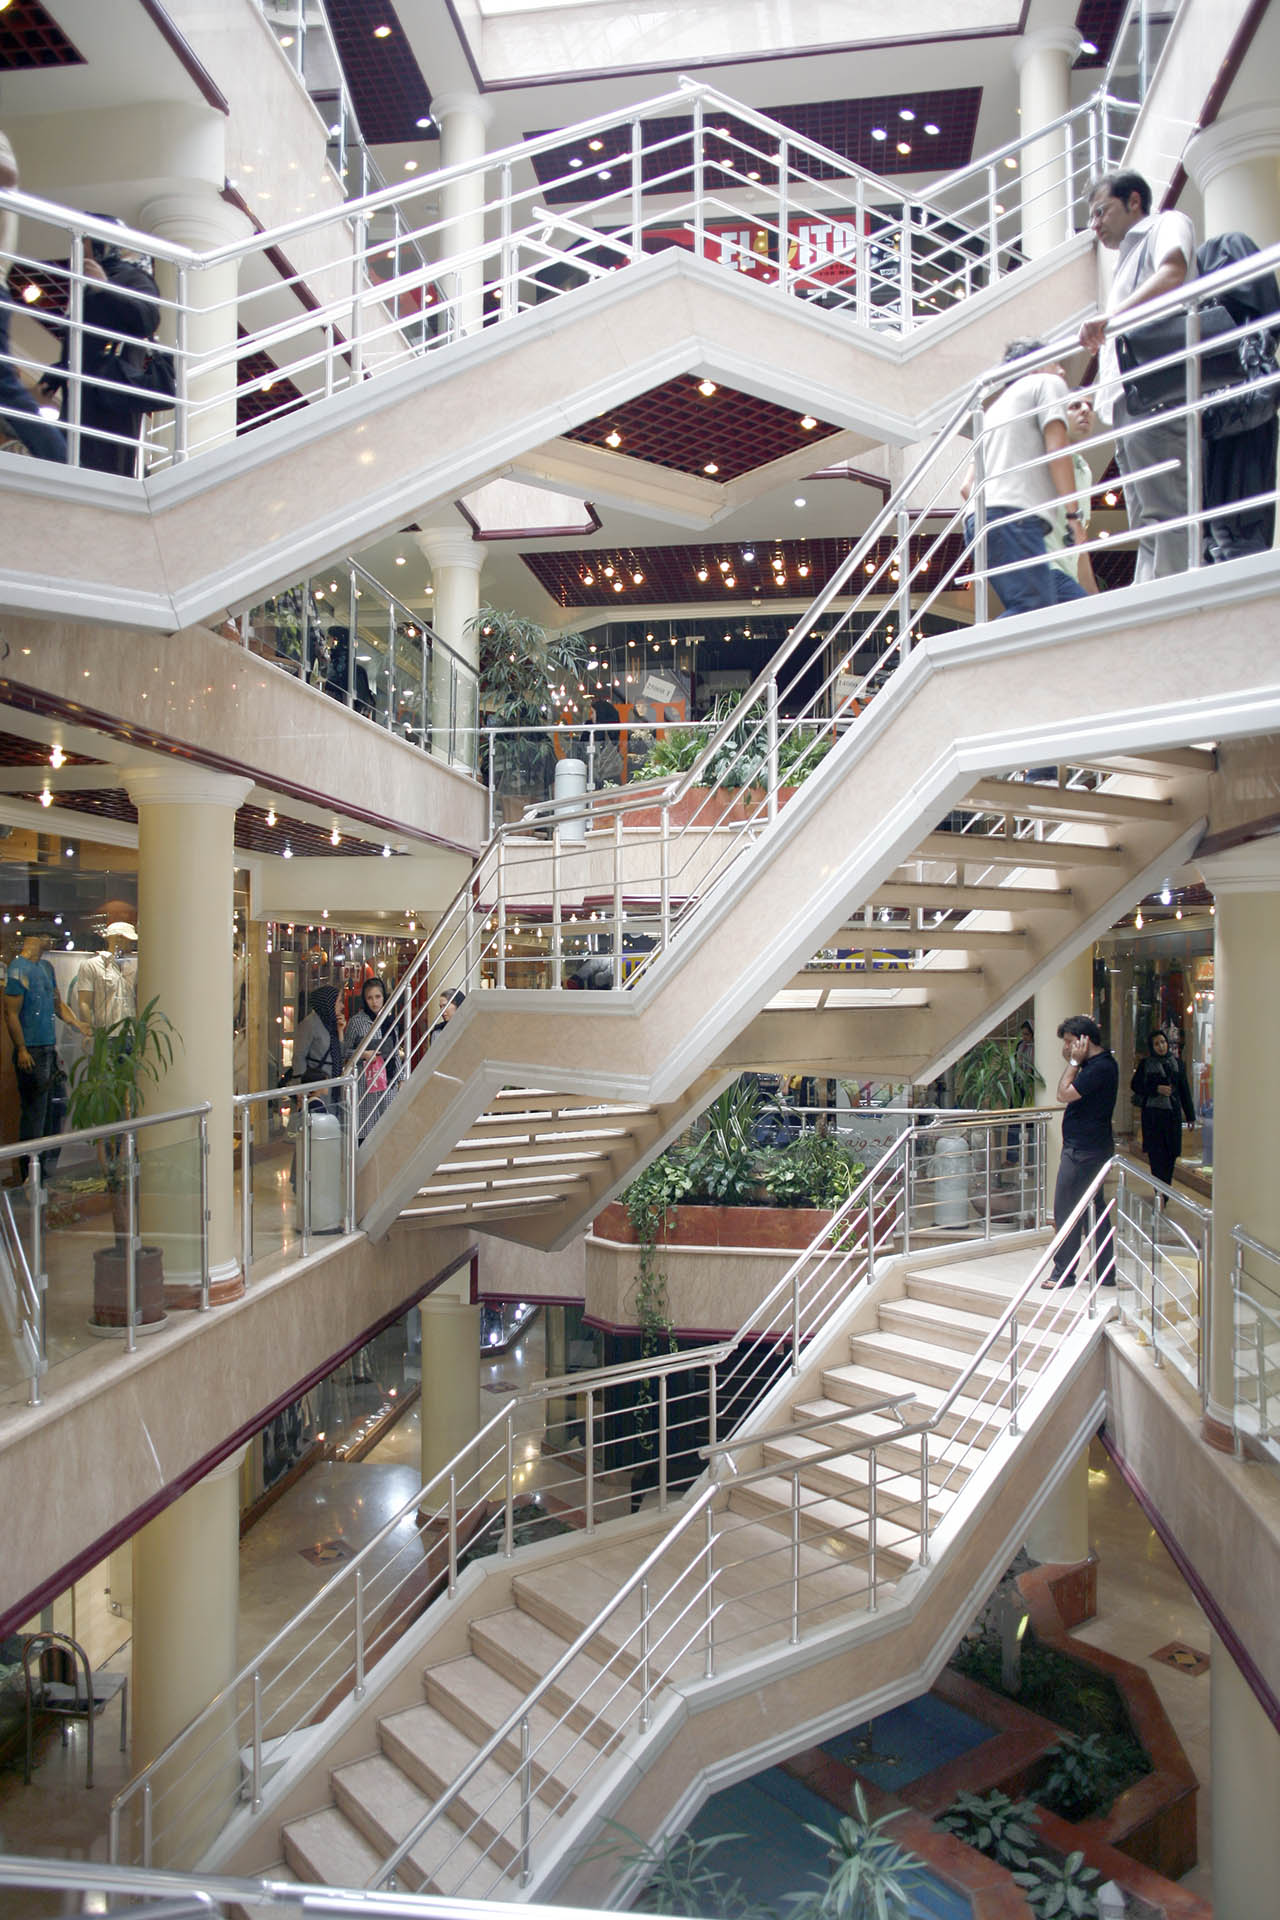 A escada de shopping continua sendo um dos grandes enigmas da humanidade. Por que todos evitam?